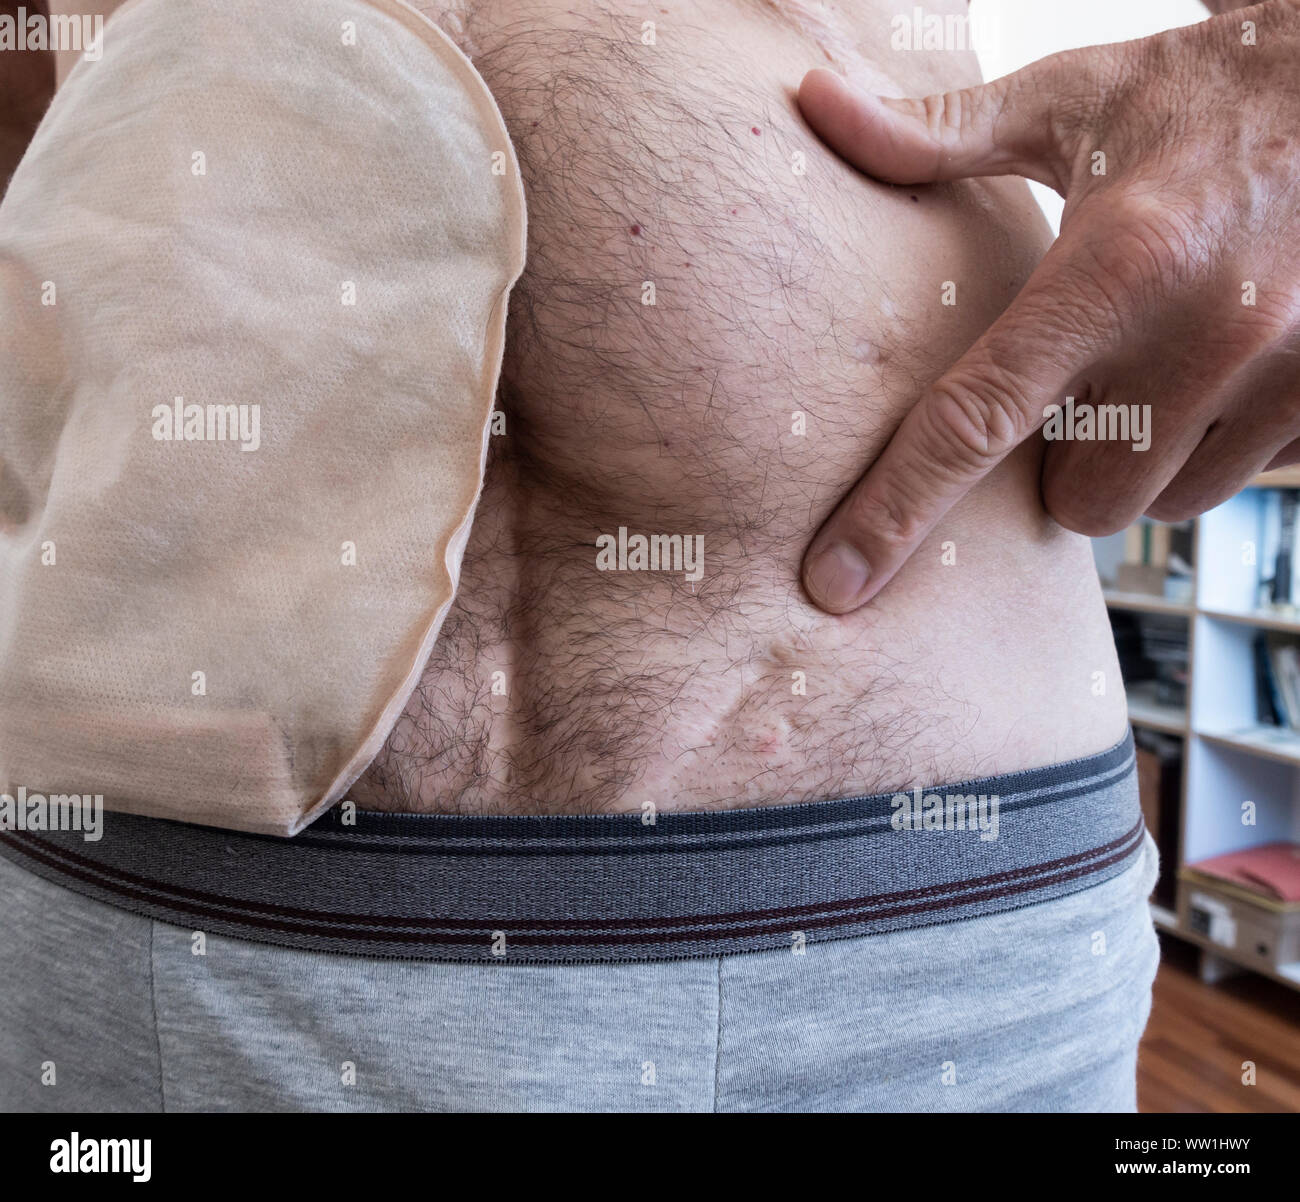 60 jährige Männlich tragen ileostoma Tasche punkte Narbe am linken Unterbauch, das Ergebnis einer Operation in 1979 zu entfernen Um einen Hoden (orchiectomy) Stockfoto